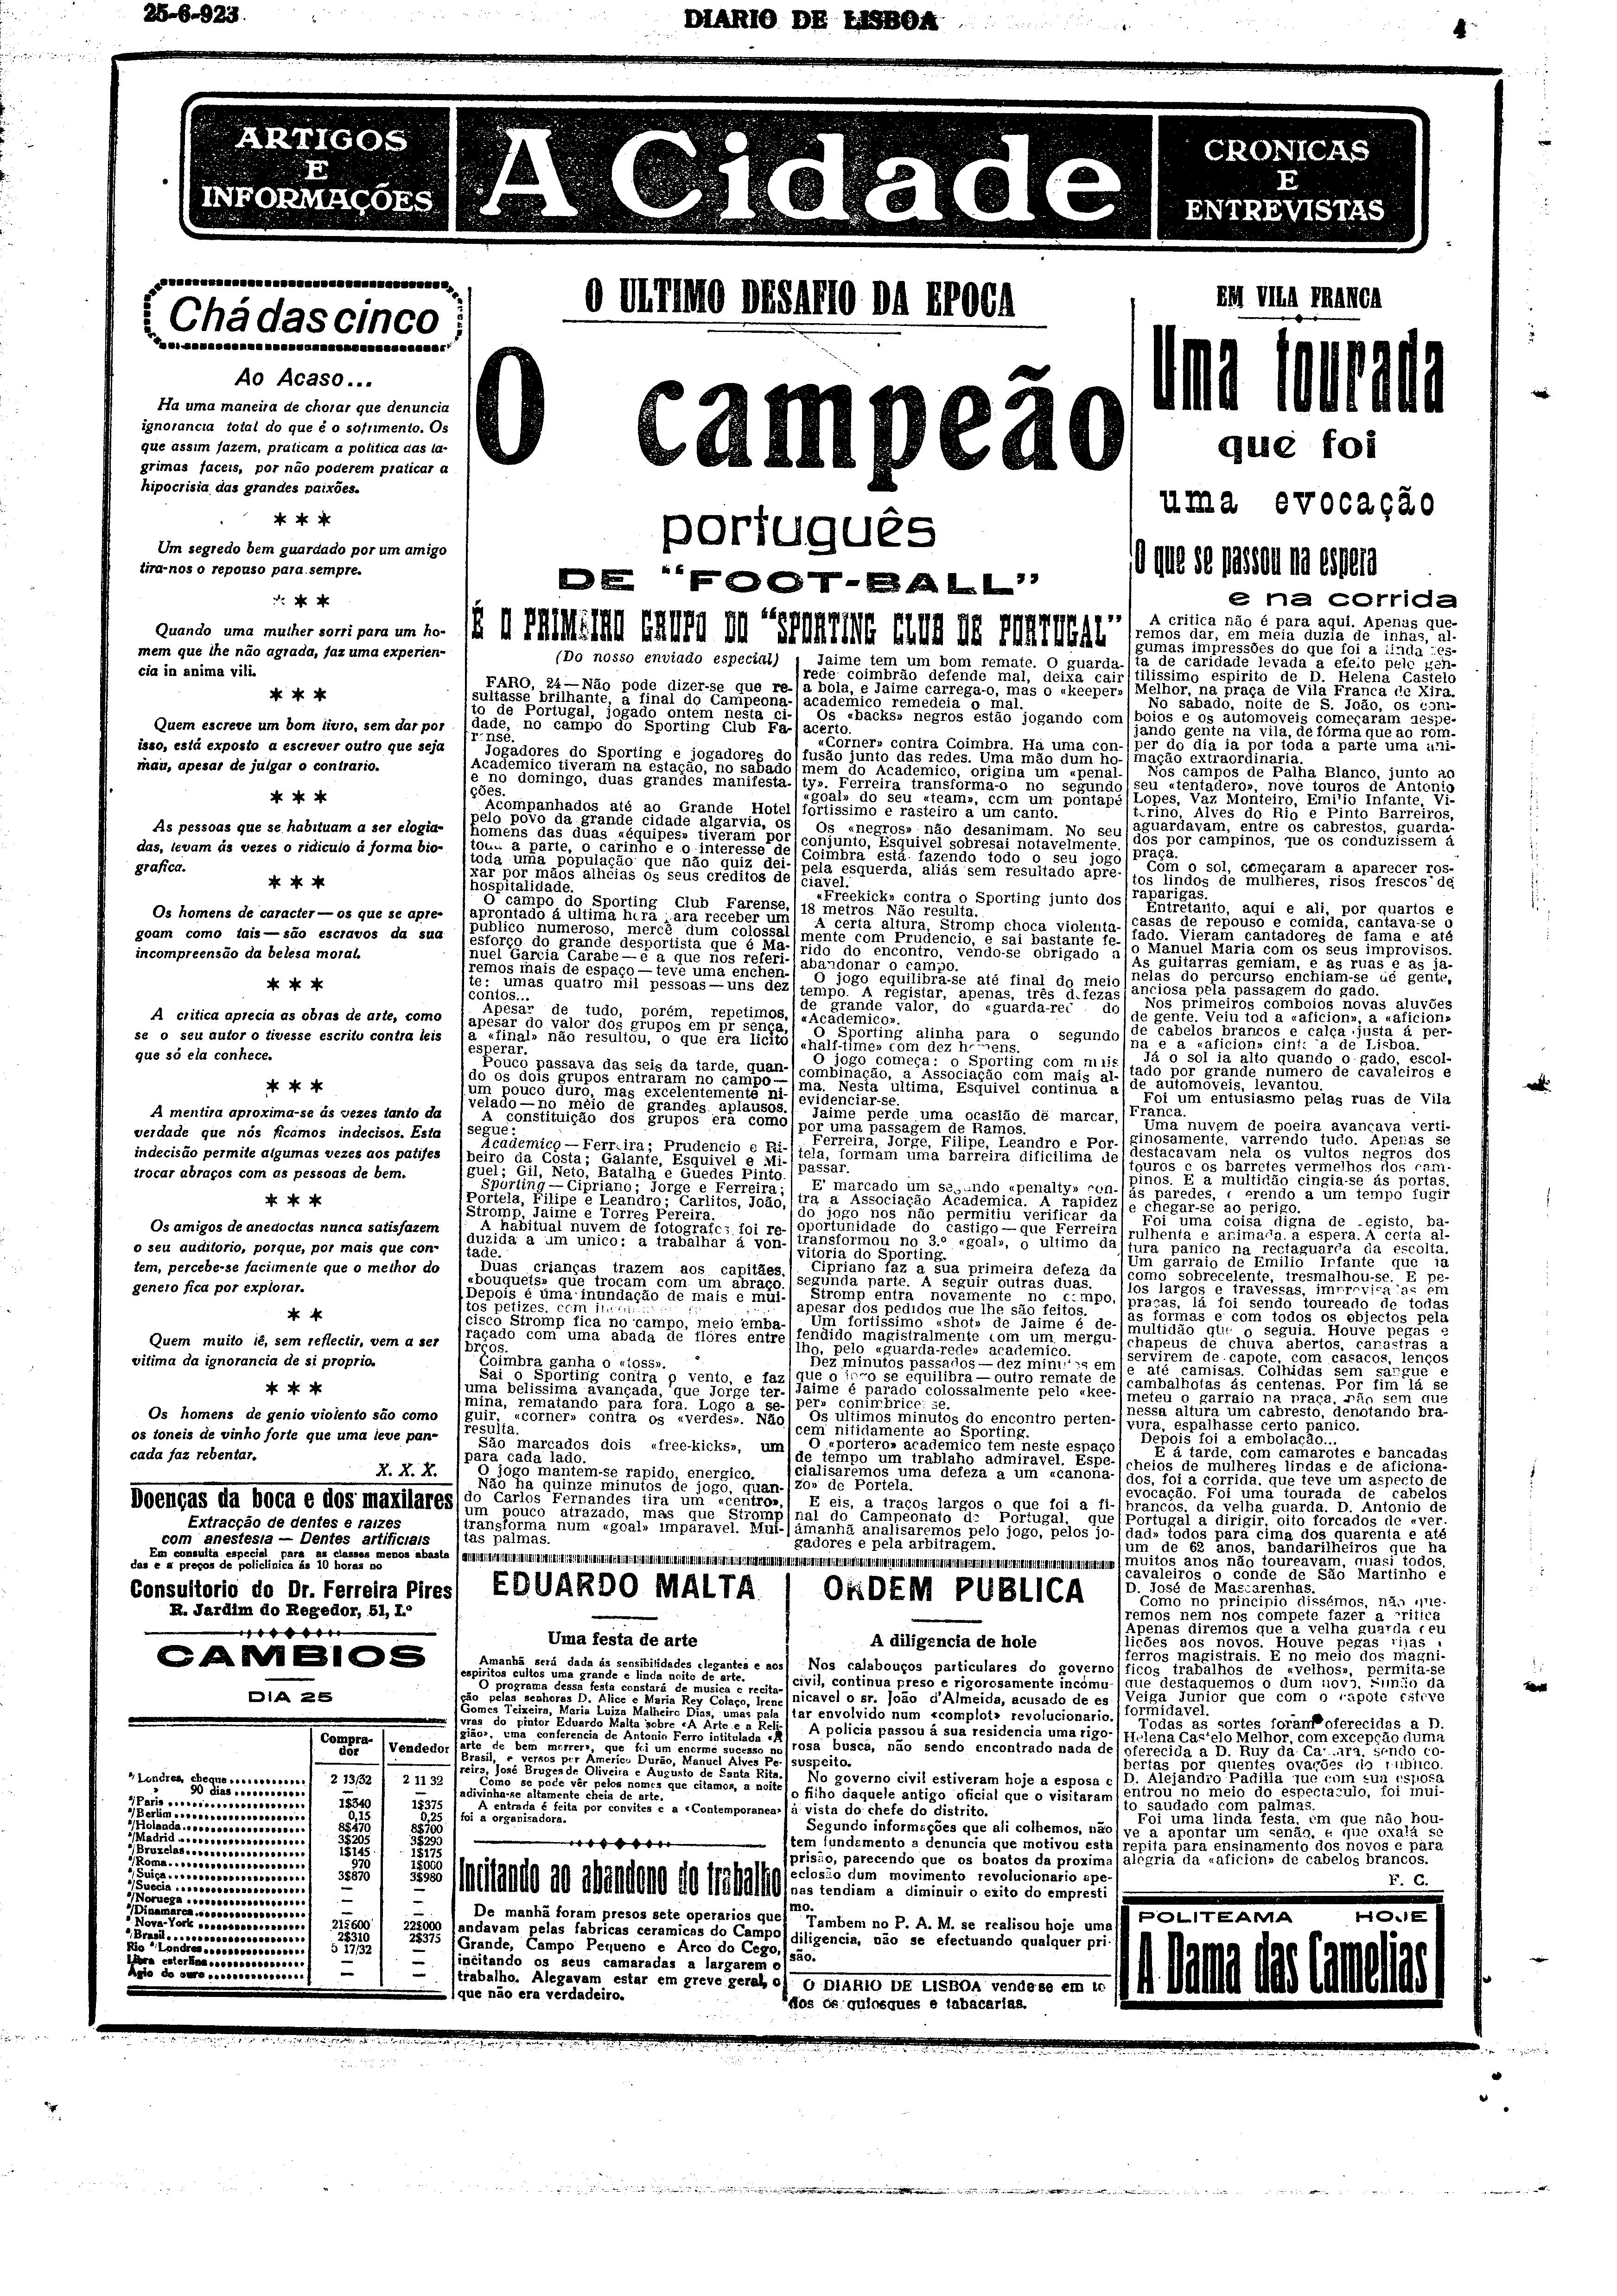 Diário de Lisboa 25JUN1923.png